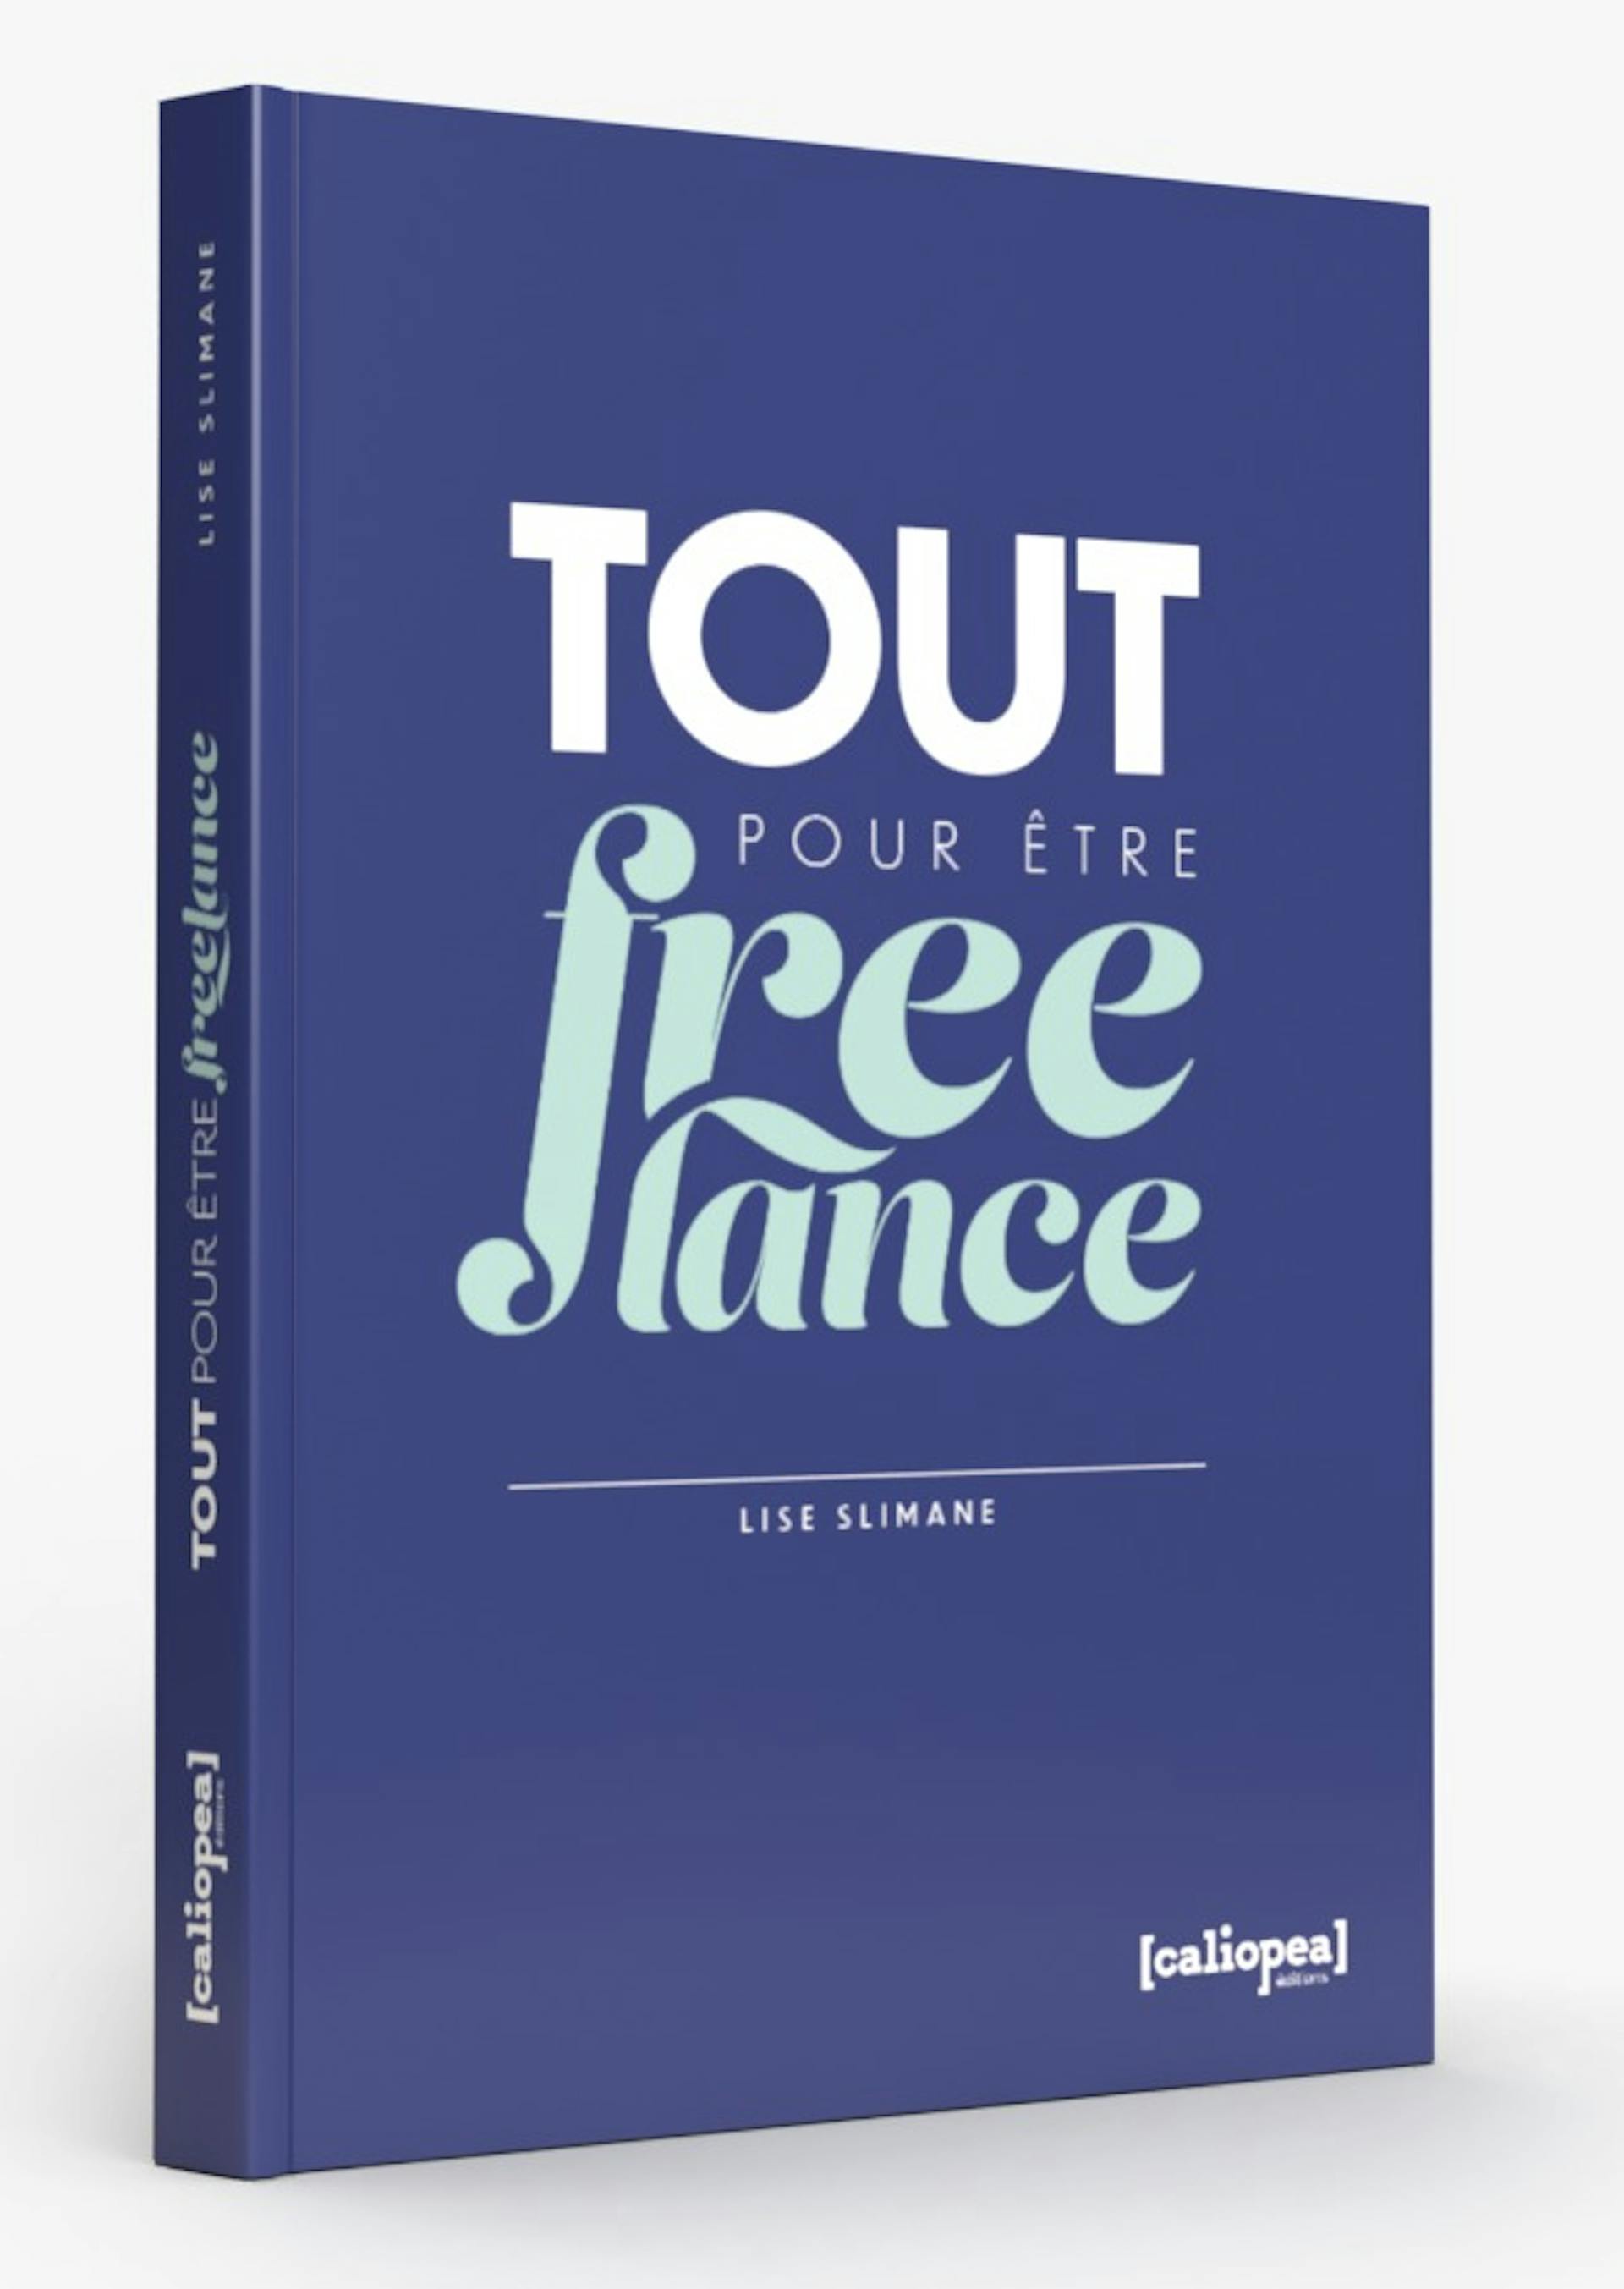 Visuel du livre Tout pour être Freelance, par Lise Slimane, Editions calipea, 2021.